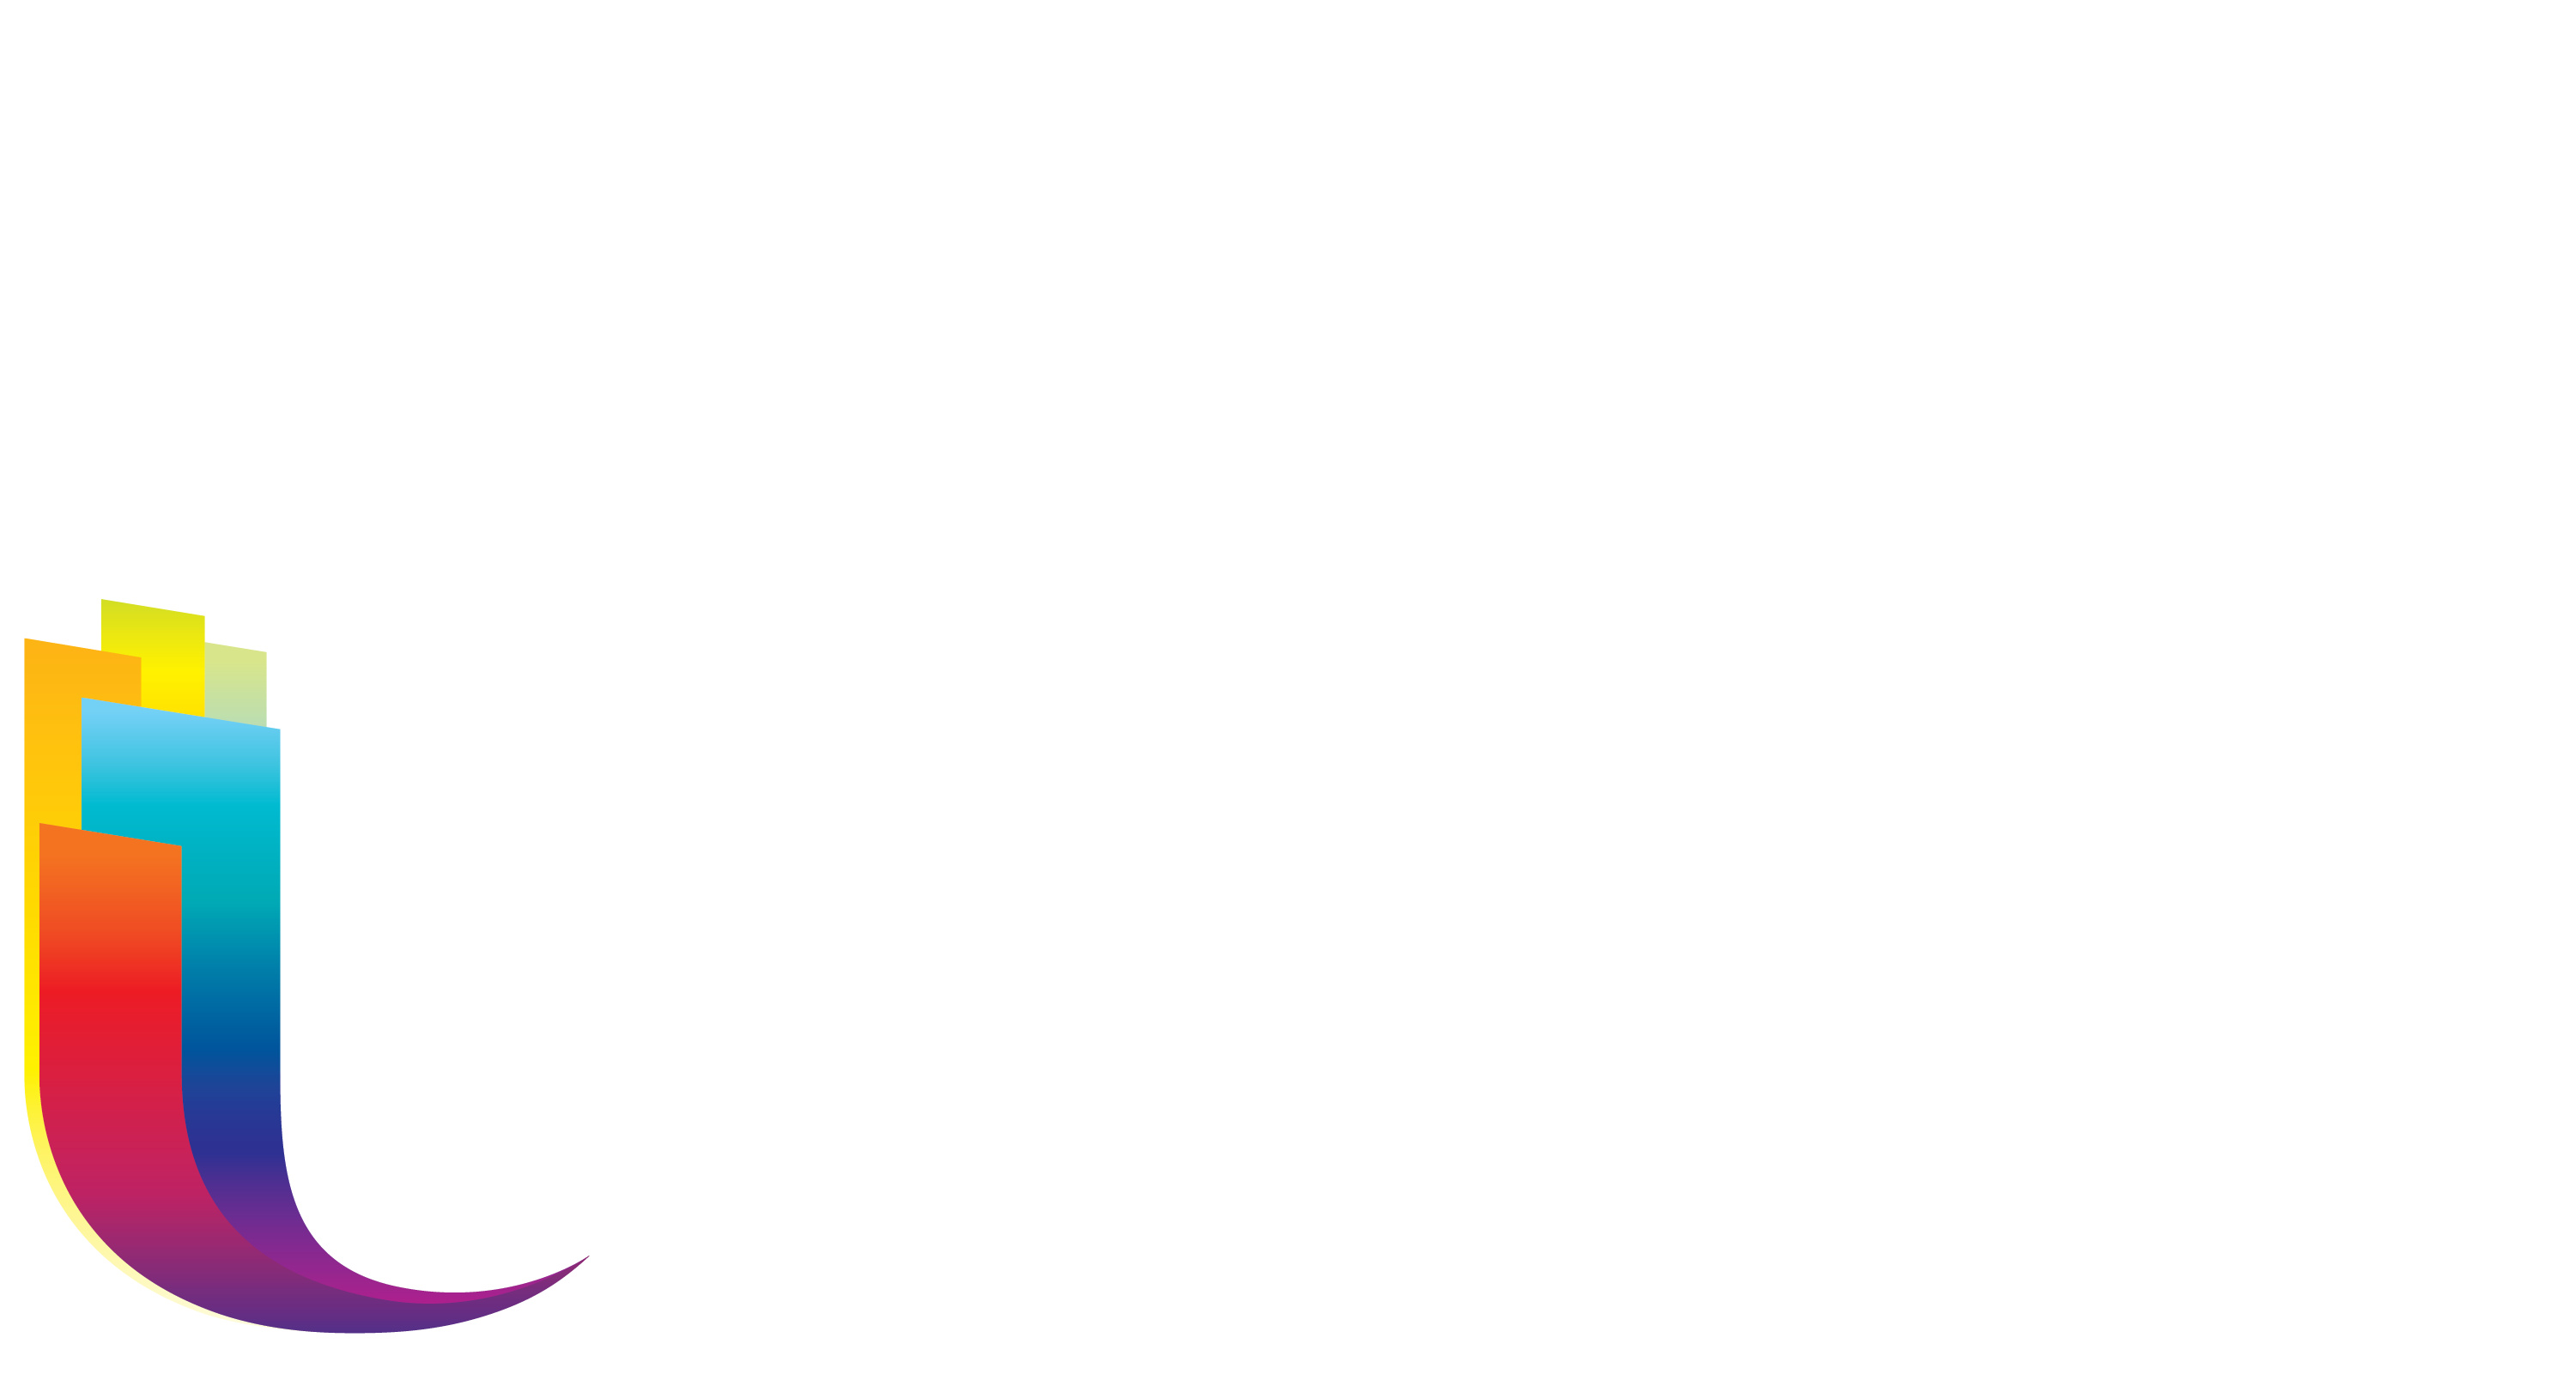 Slider TV logos banner